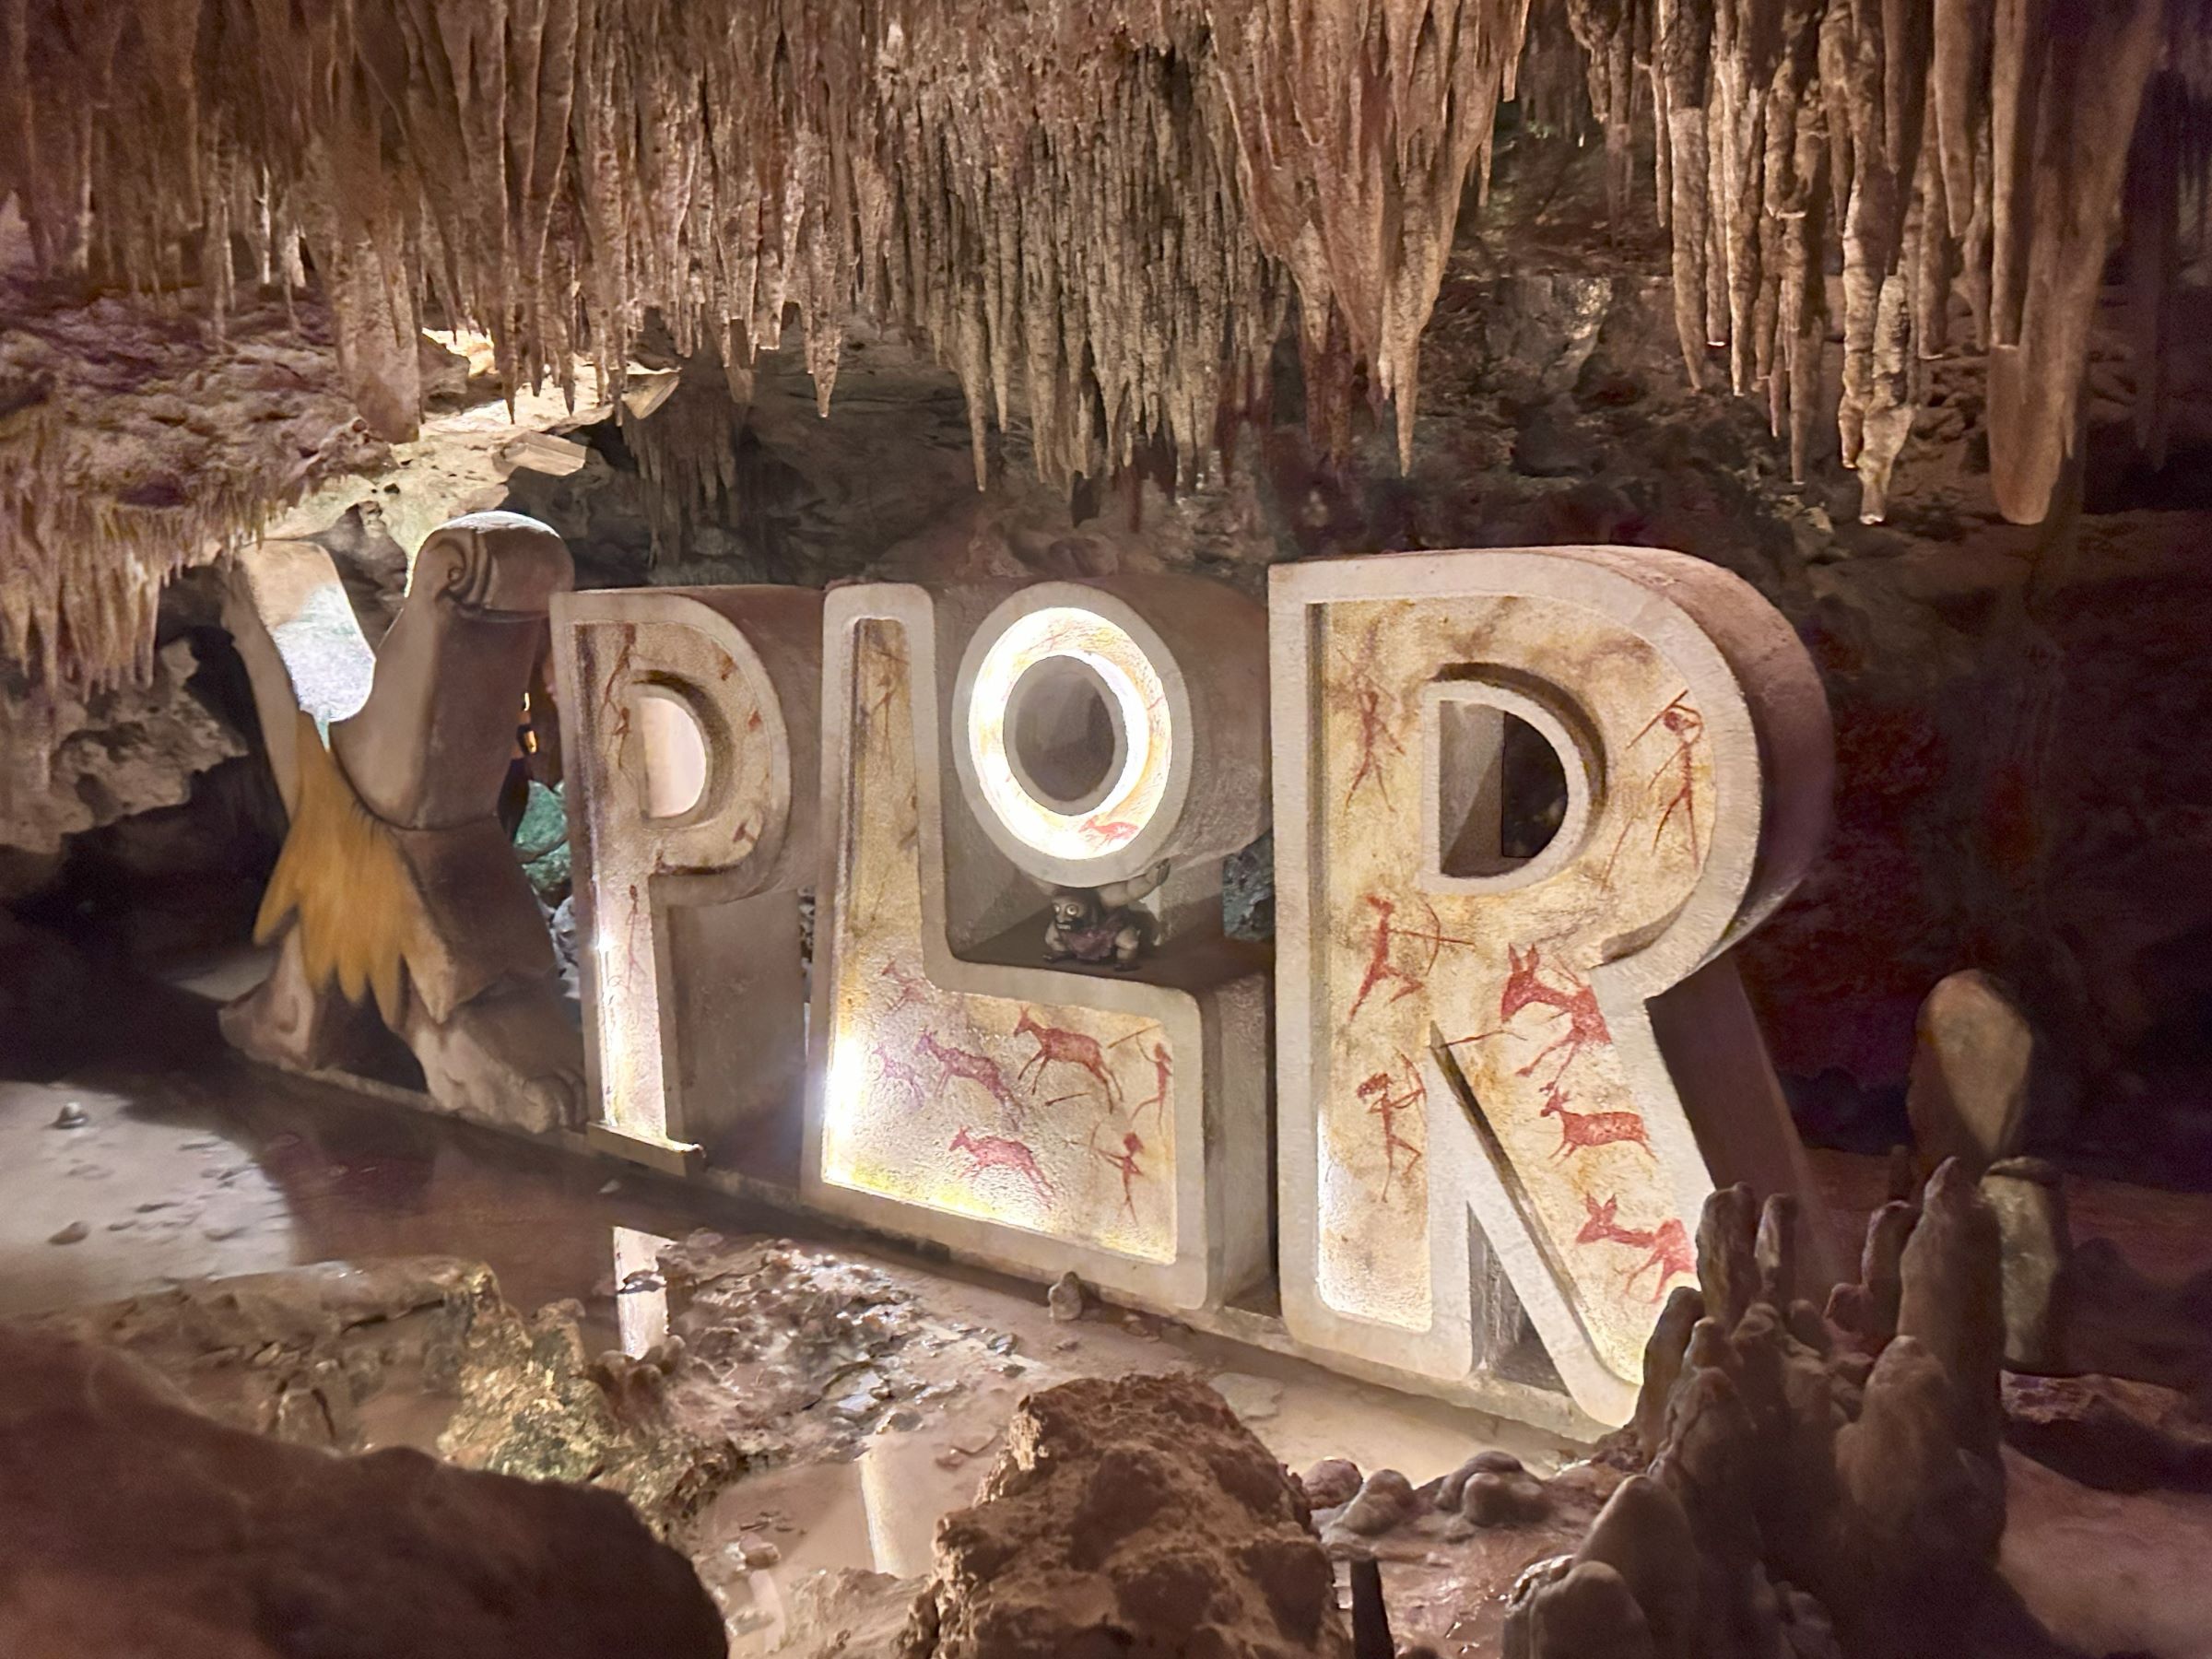 액티비티 테마파크인 멕시코 스플로르(Xplor) 2편 -  지하 래프팅과 동굴 수영, 그리고 칸쿤여행의 끝